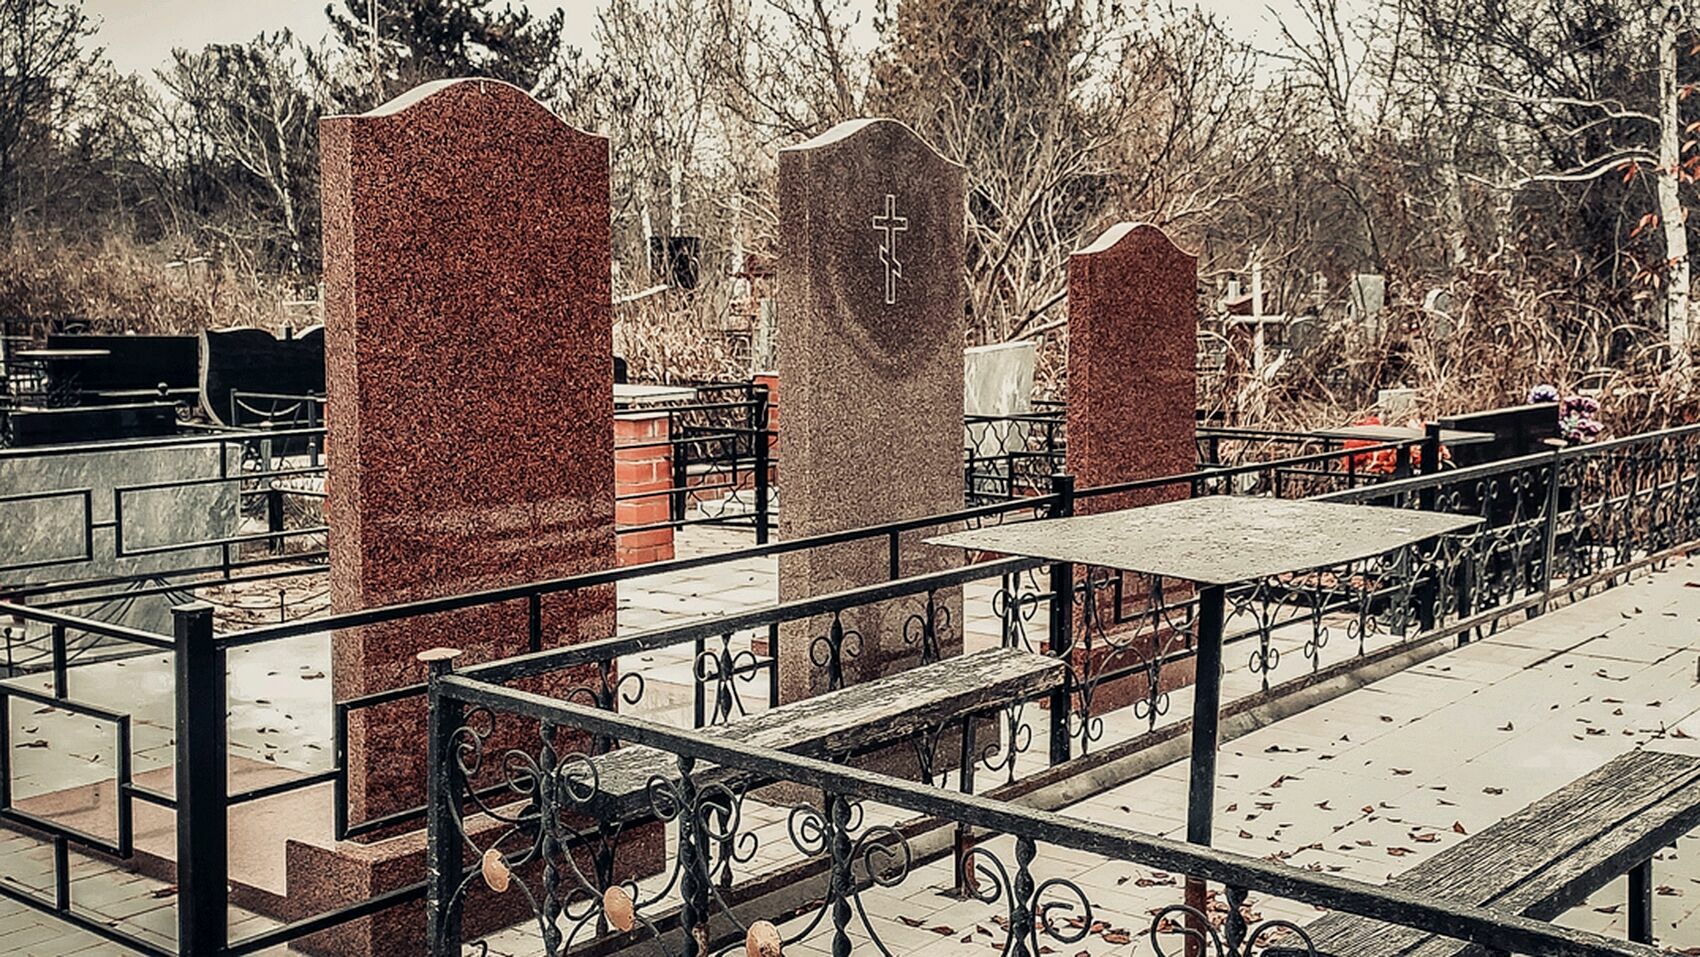 Славянское кладбище в Краснодаре закрыто, но захоронения продолжаются. Как это?